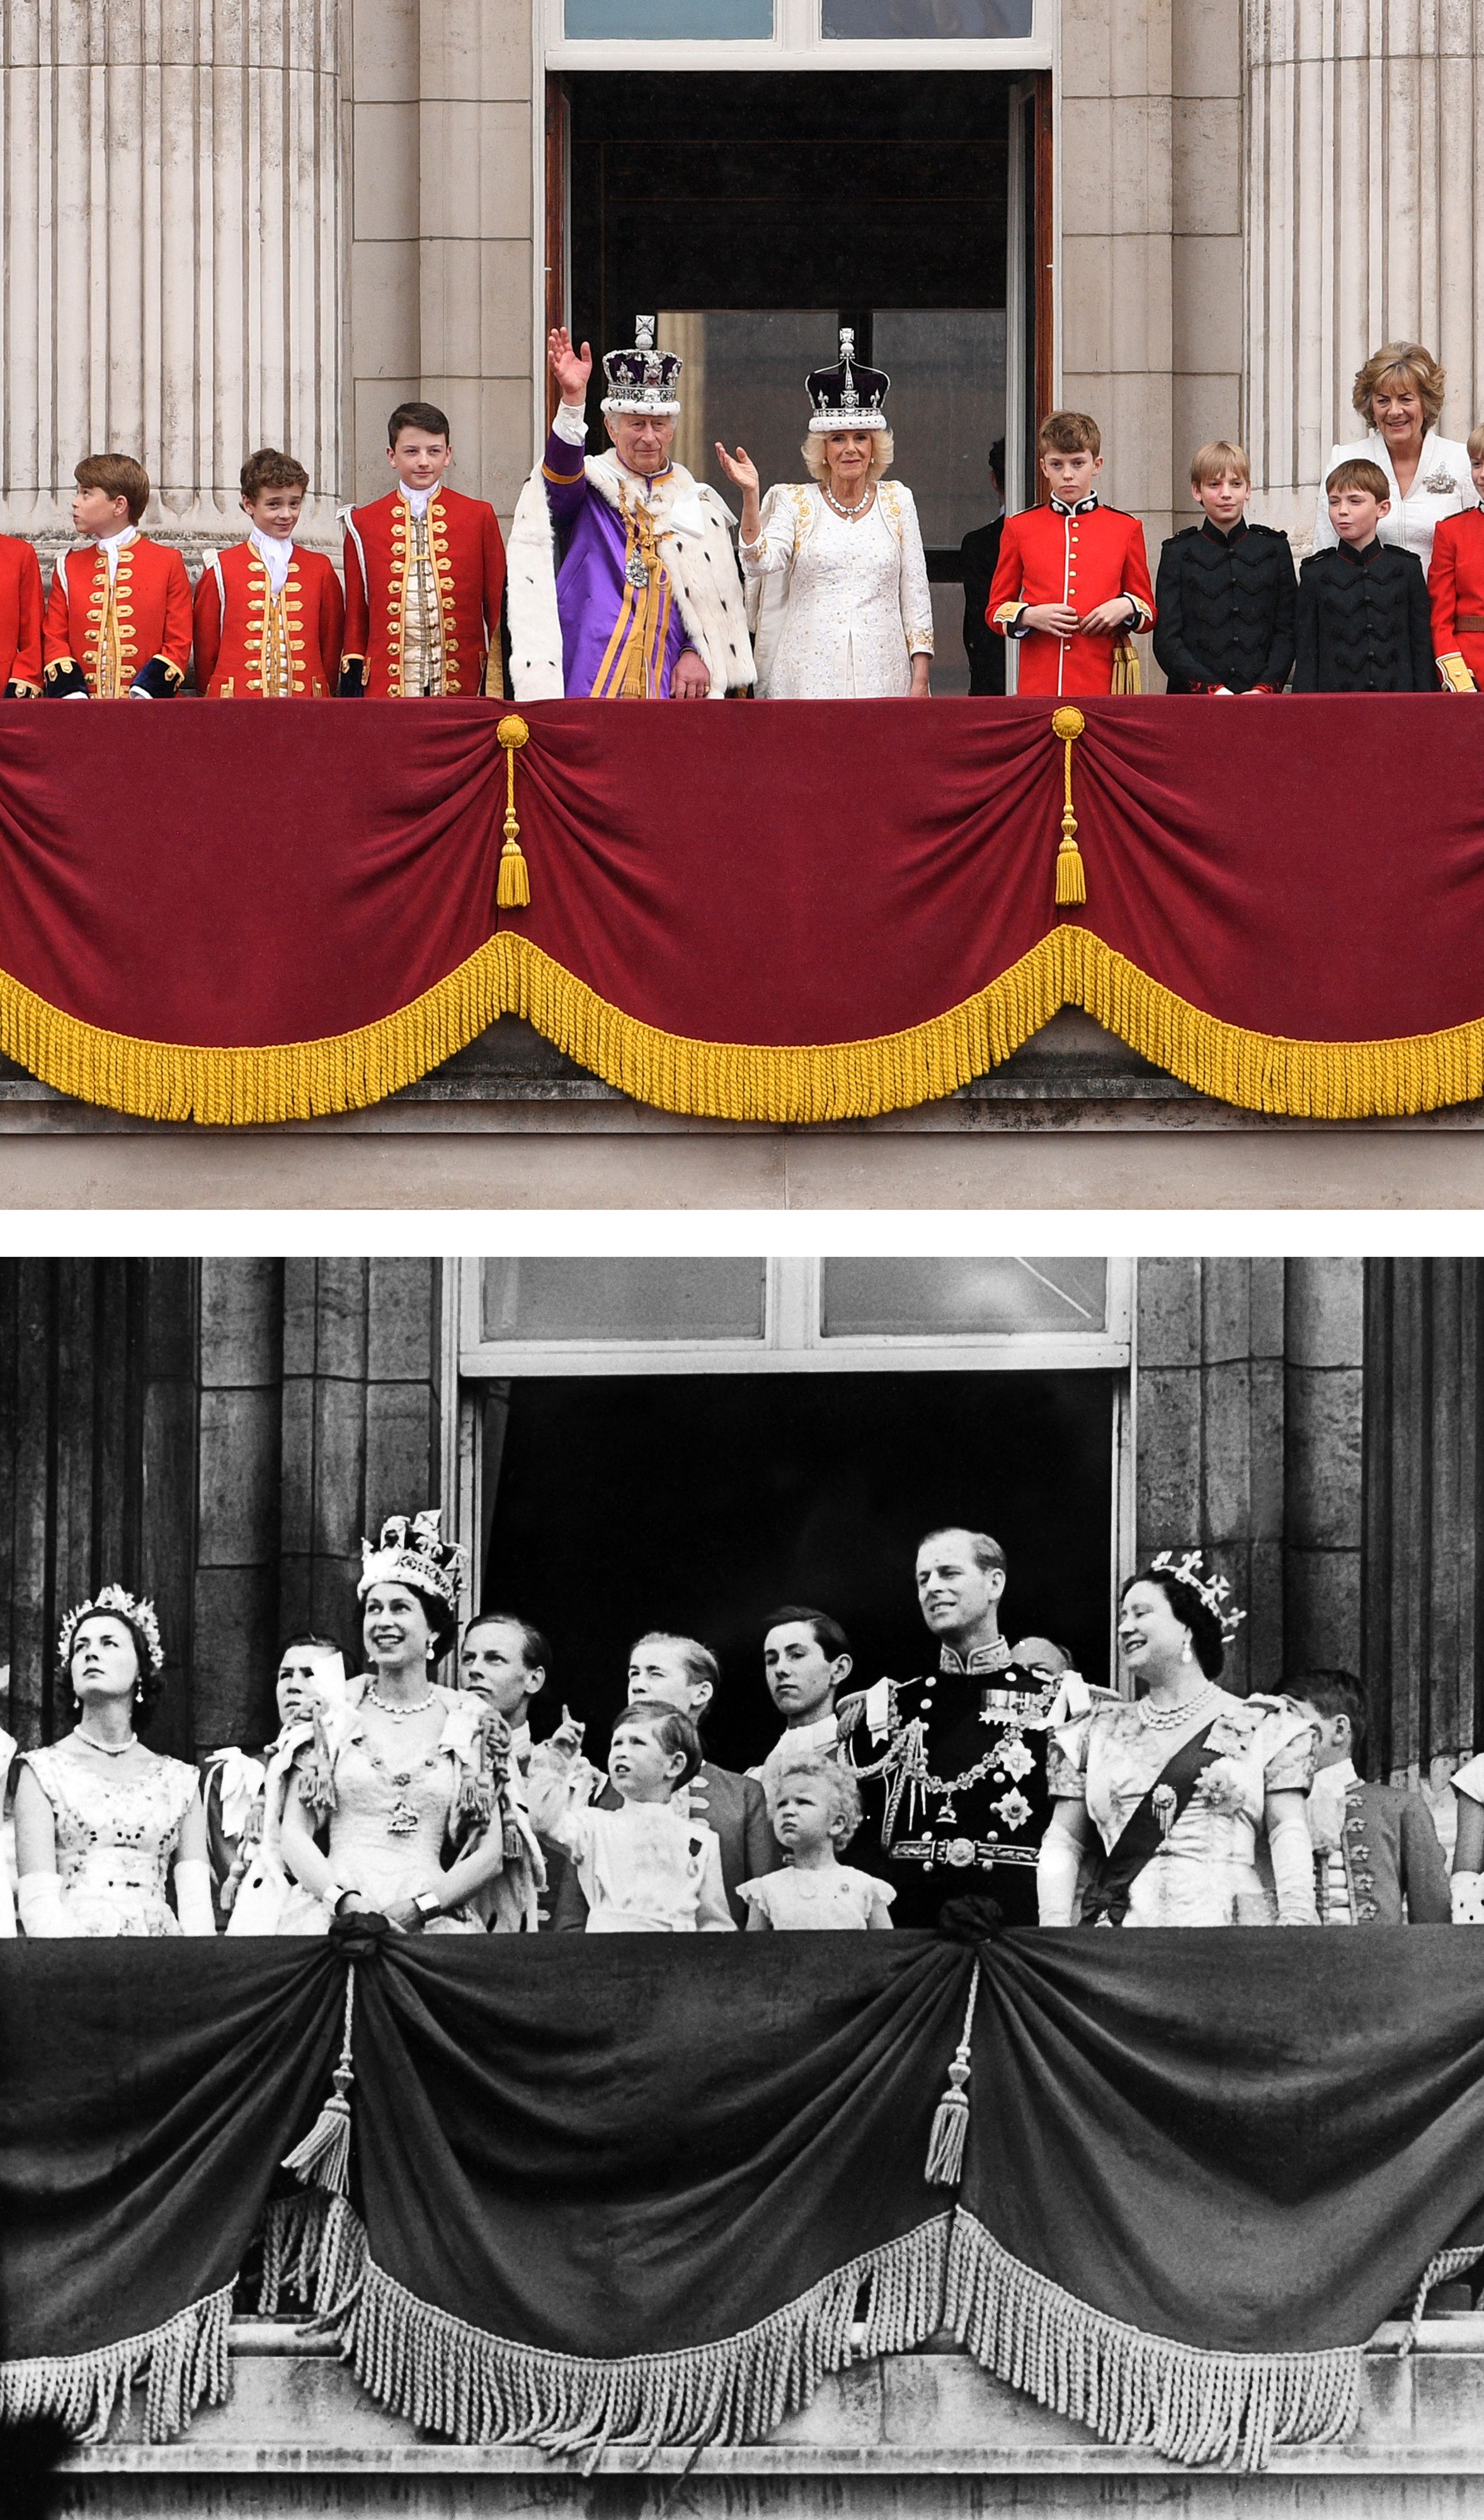 위쪽 사진은 6일(현지시간) 런런 버킹엄궁 발코니에서 손을 흔들고 있는 찰스 3세 영국 국왕과 카밀라 여왕. 아래 사진은 1953년 6월 2일 같은 장소에서 손을 흔들고 있는 엘리자베스 2세 영국 여왕, 남편 필립 공, 찰스 왕세자, 앤 공주, 엘리자베스 여왕, 마거릿 공주. 런던 AFP 연합뉴스